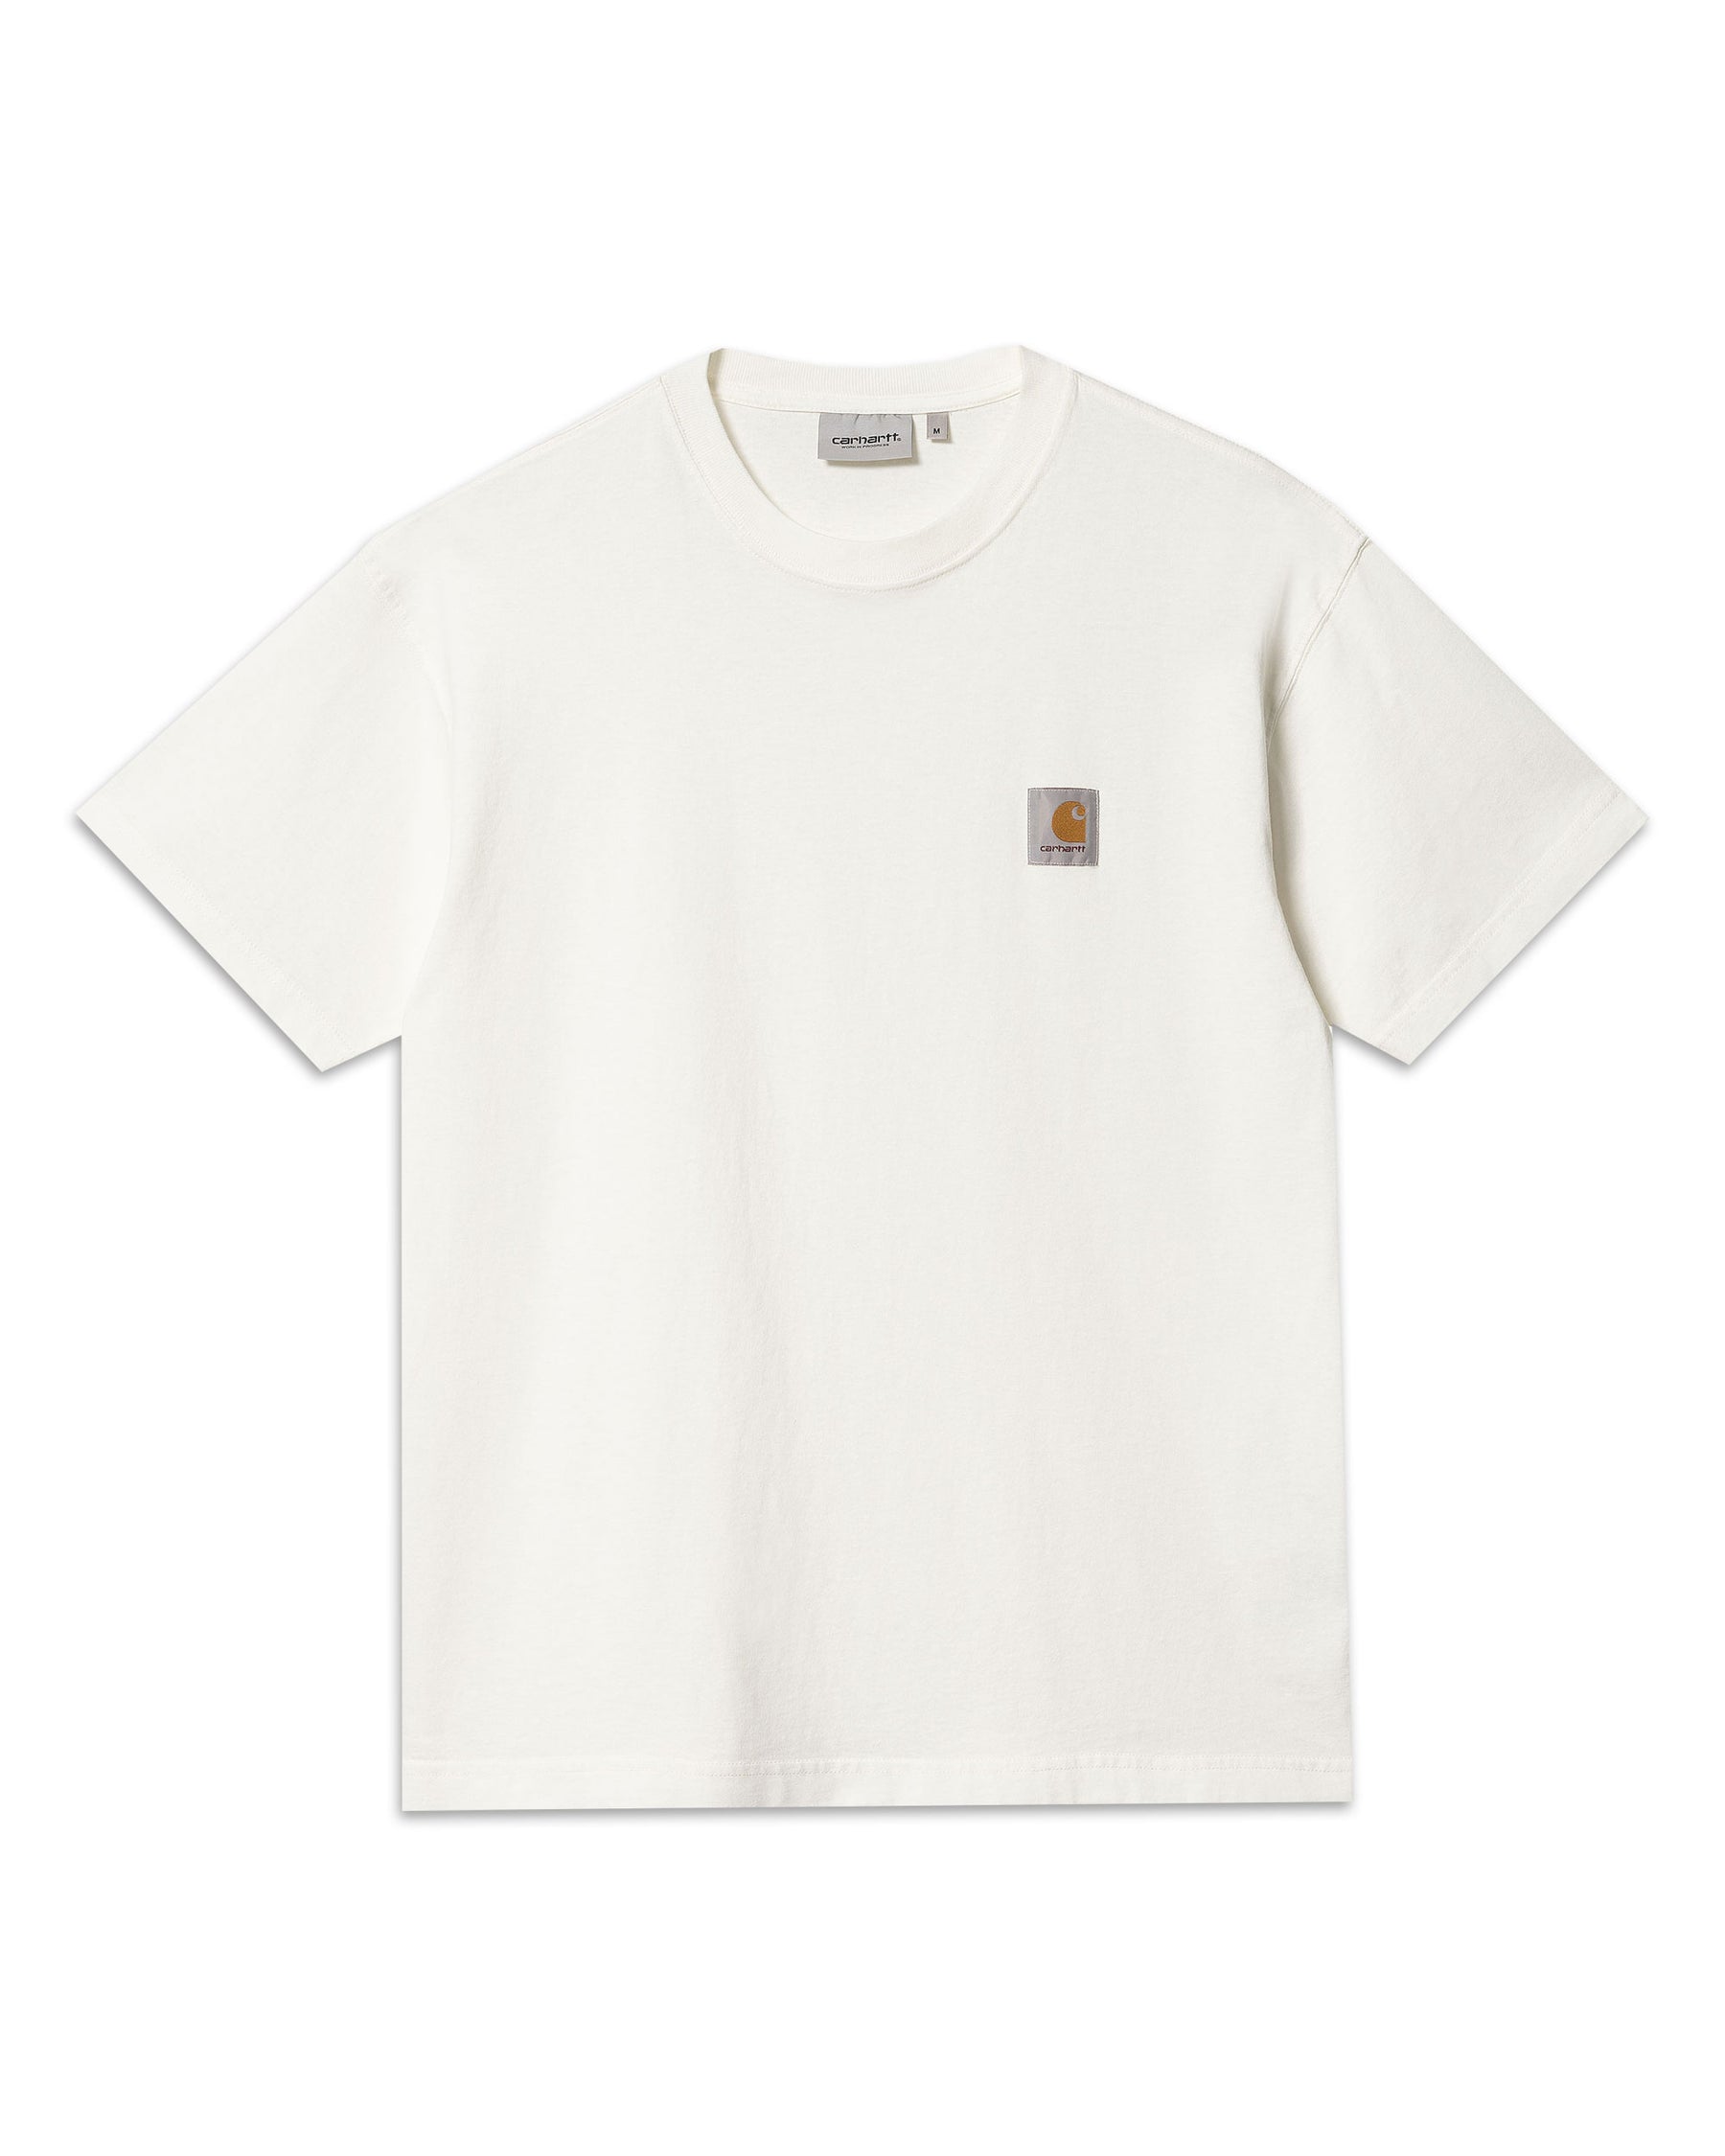 Carhartt Wip Nelson T-Shirt Wax Garment Dyed